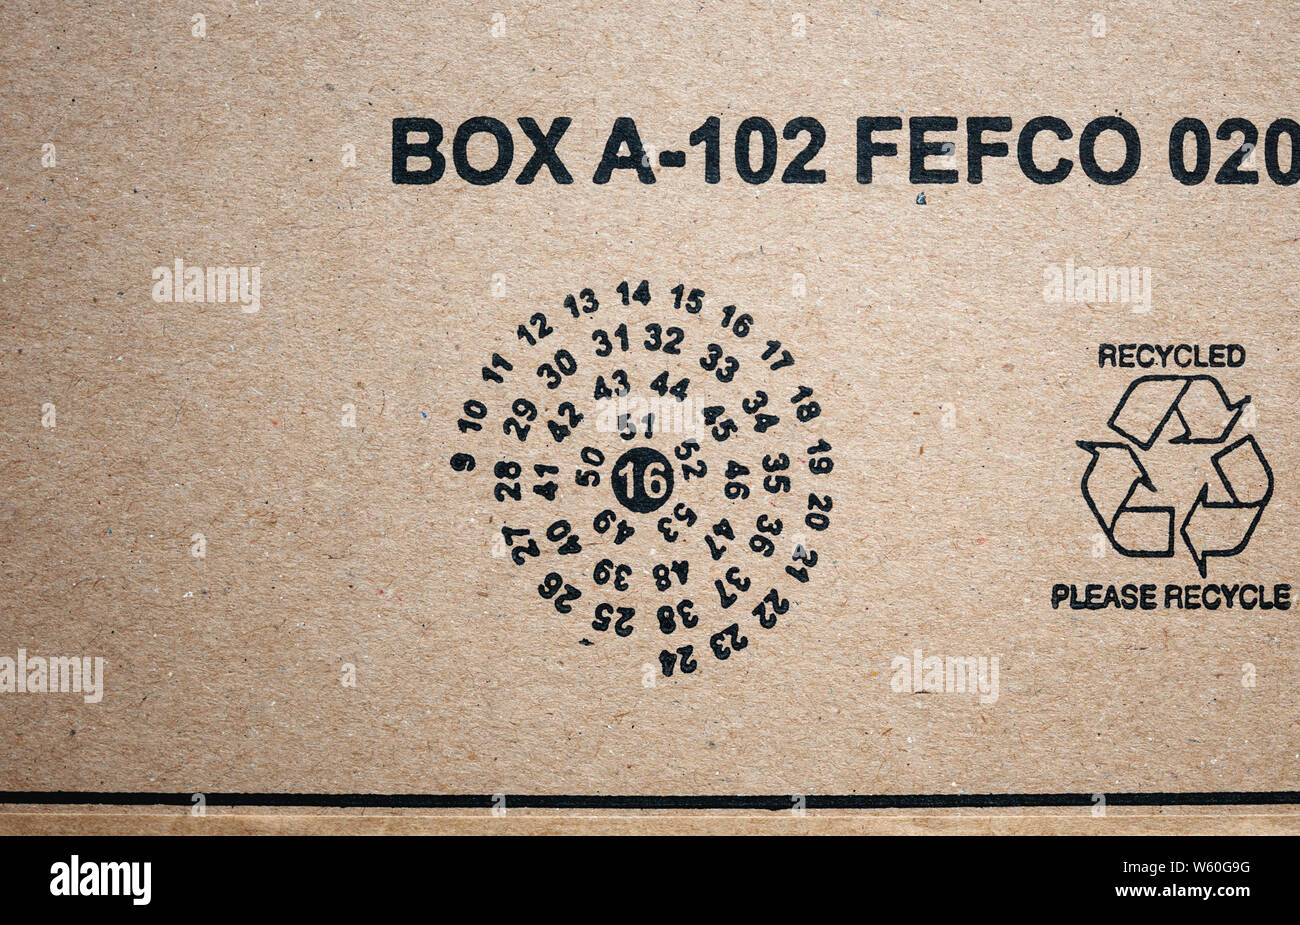 Paris, France - Jan 29, 2019 : Vue de dessus à l'Amazon e-commerce colis  boîte en carton avec date de fabrication et le recyclage Merci de recycler  signer Photo Stock - Alamy